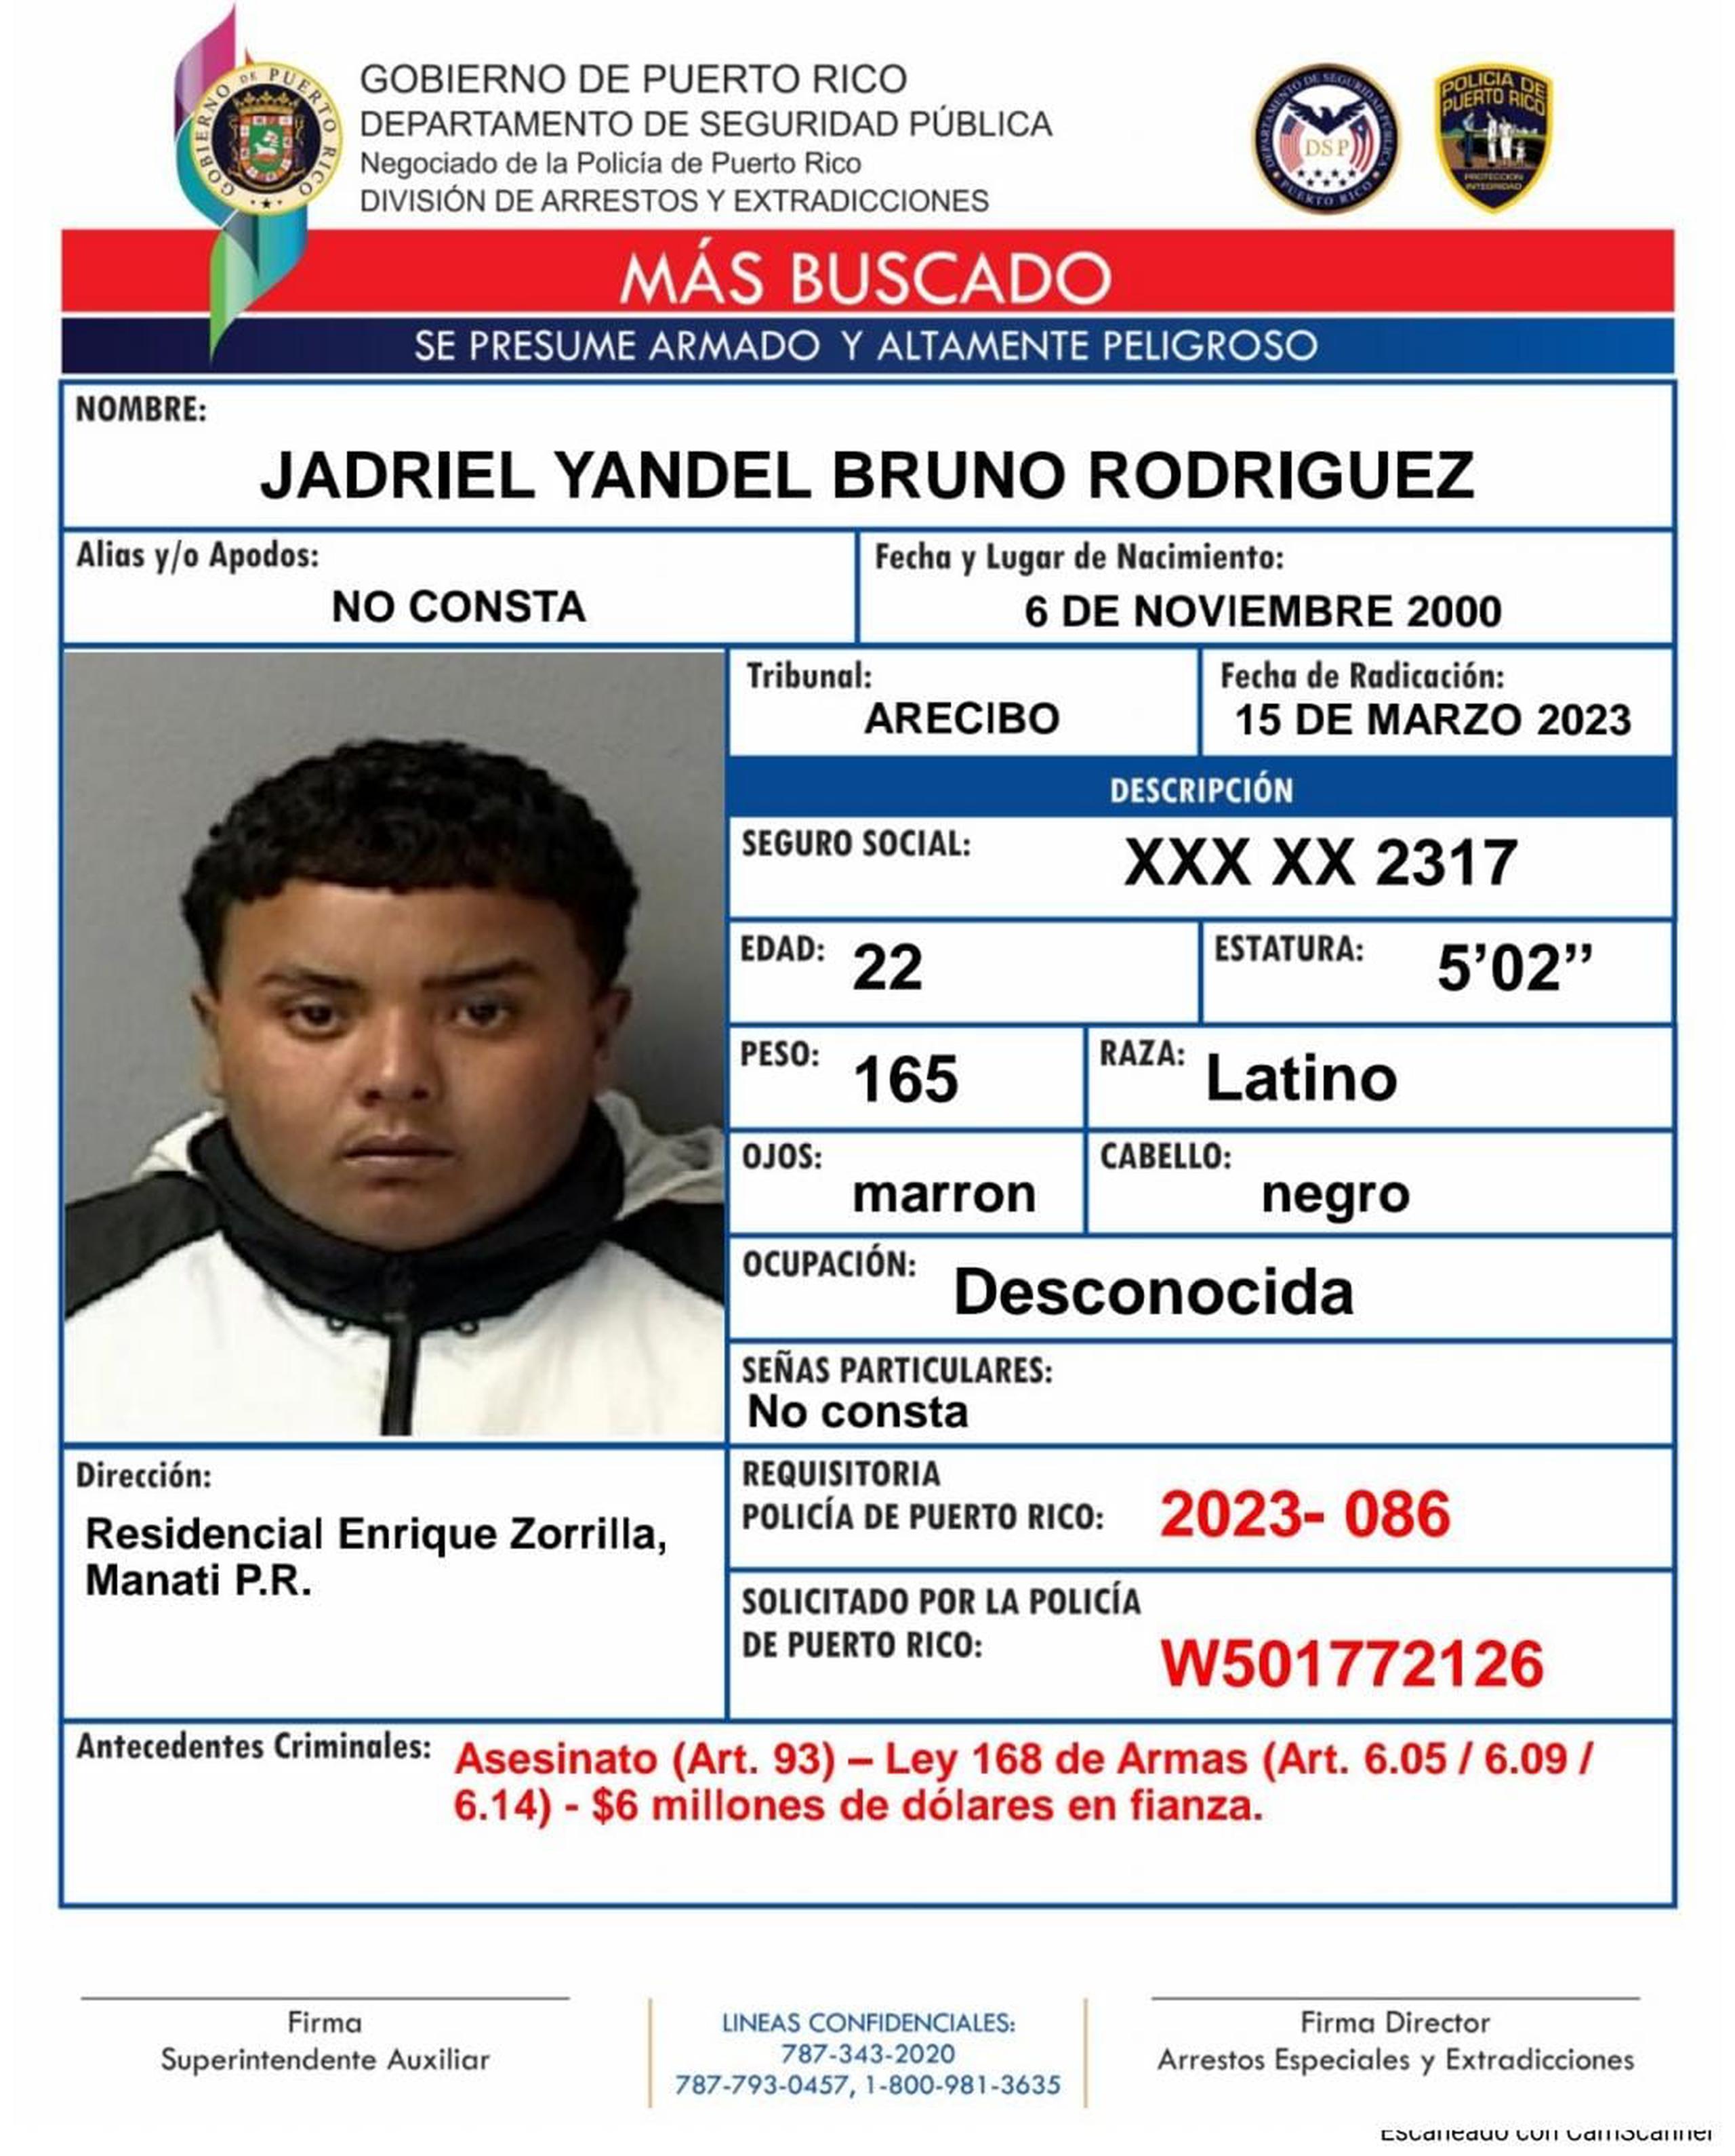 Contra Jadriel Yandel Bruno Rodríguez de 22 años, miembro de la ganga de "Hasta los Marcian", pesa una orden de arresto con una fianza de $6 millones.